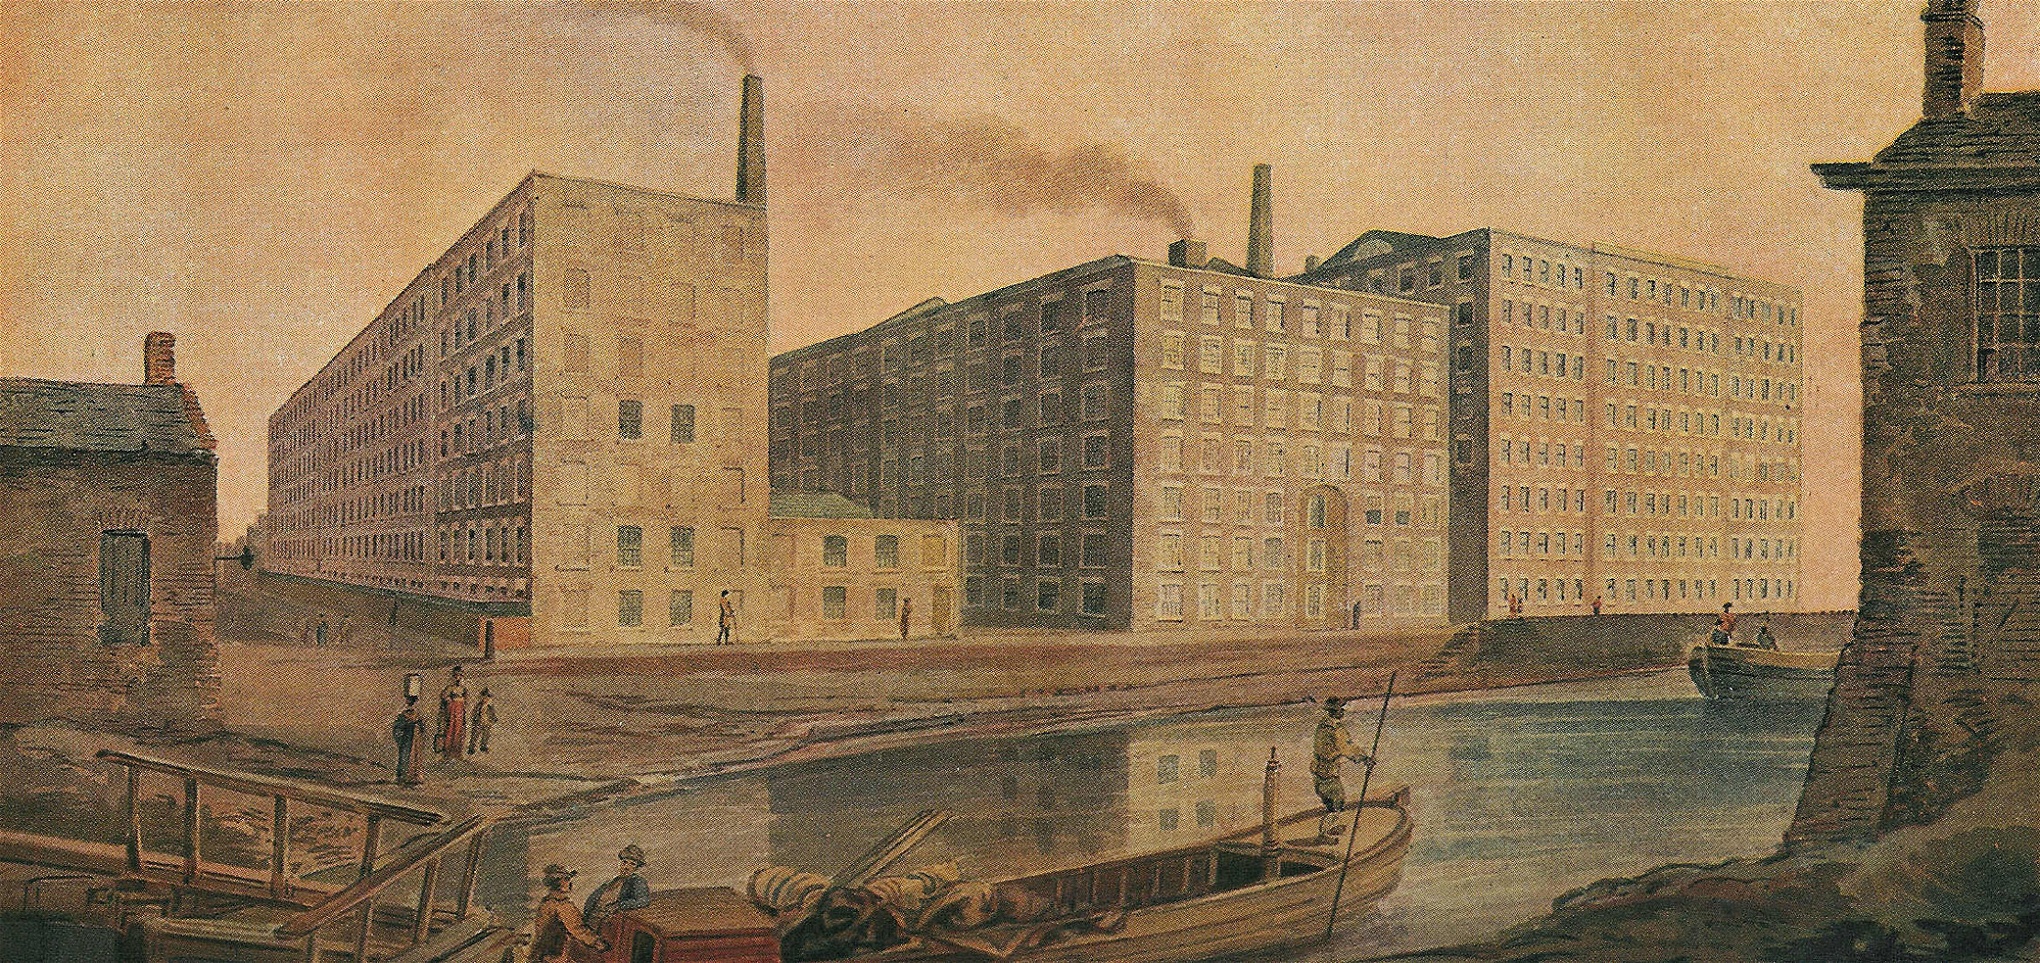 McConnel & Companys bomullsfabrik i Manchester cirka 1820, avbildad i akvarell av okänd upphovsperson. Slaveriets våld och exploatering låg till grund till den brittiska bomullsindustri som vi associerar med 1800-talets industrirevolution.